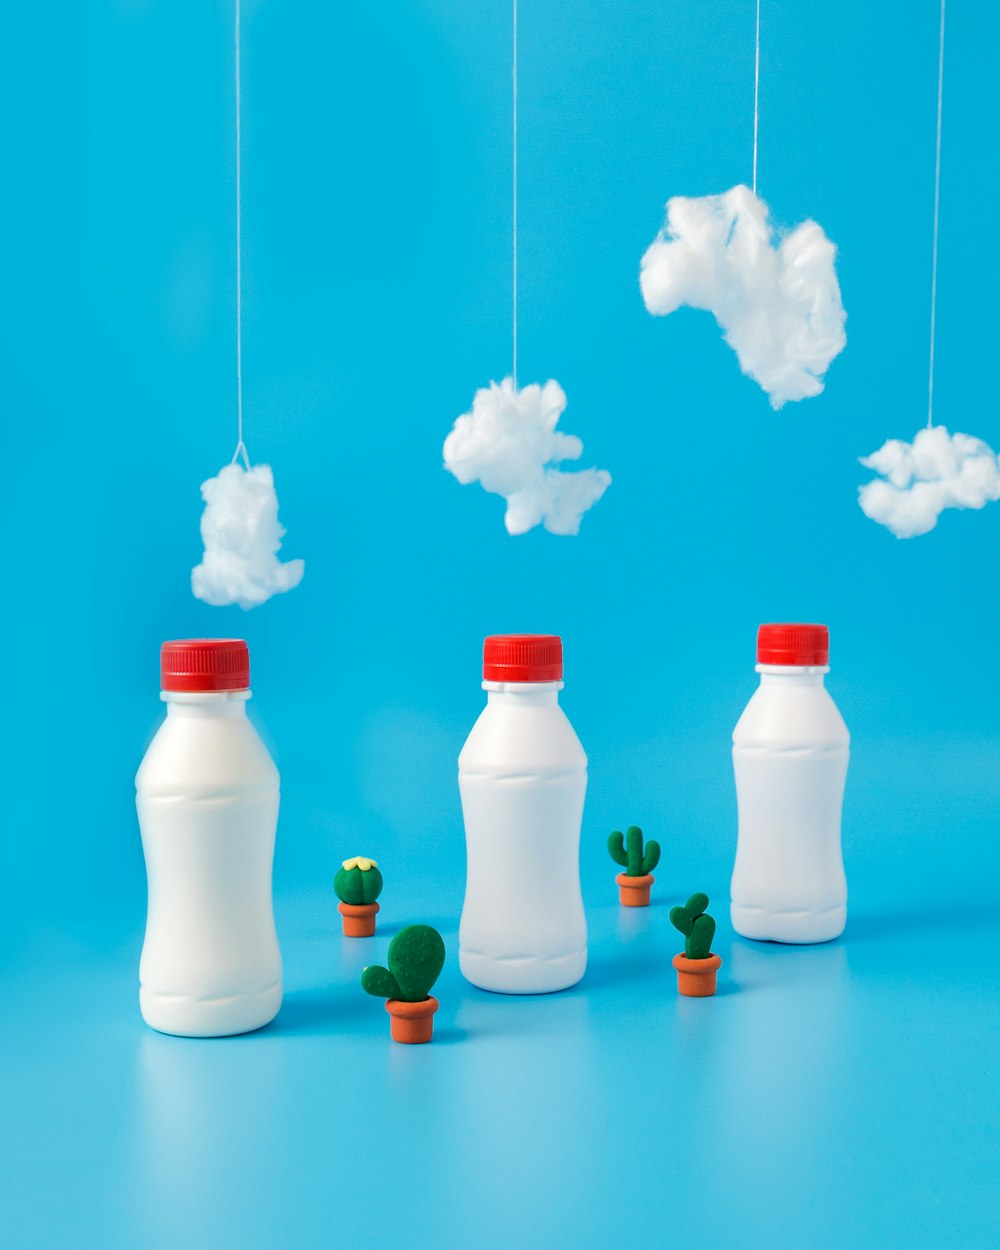 tre bottiglie di plastica bianche sotto cotoni bianchi